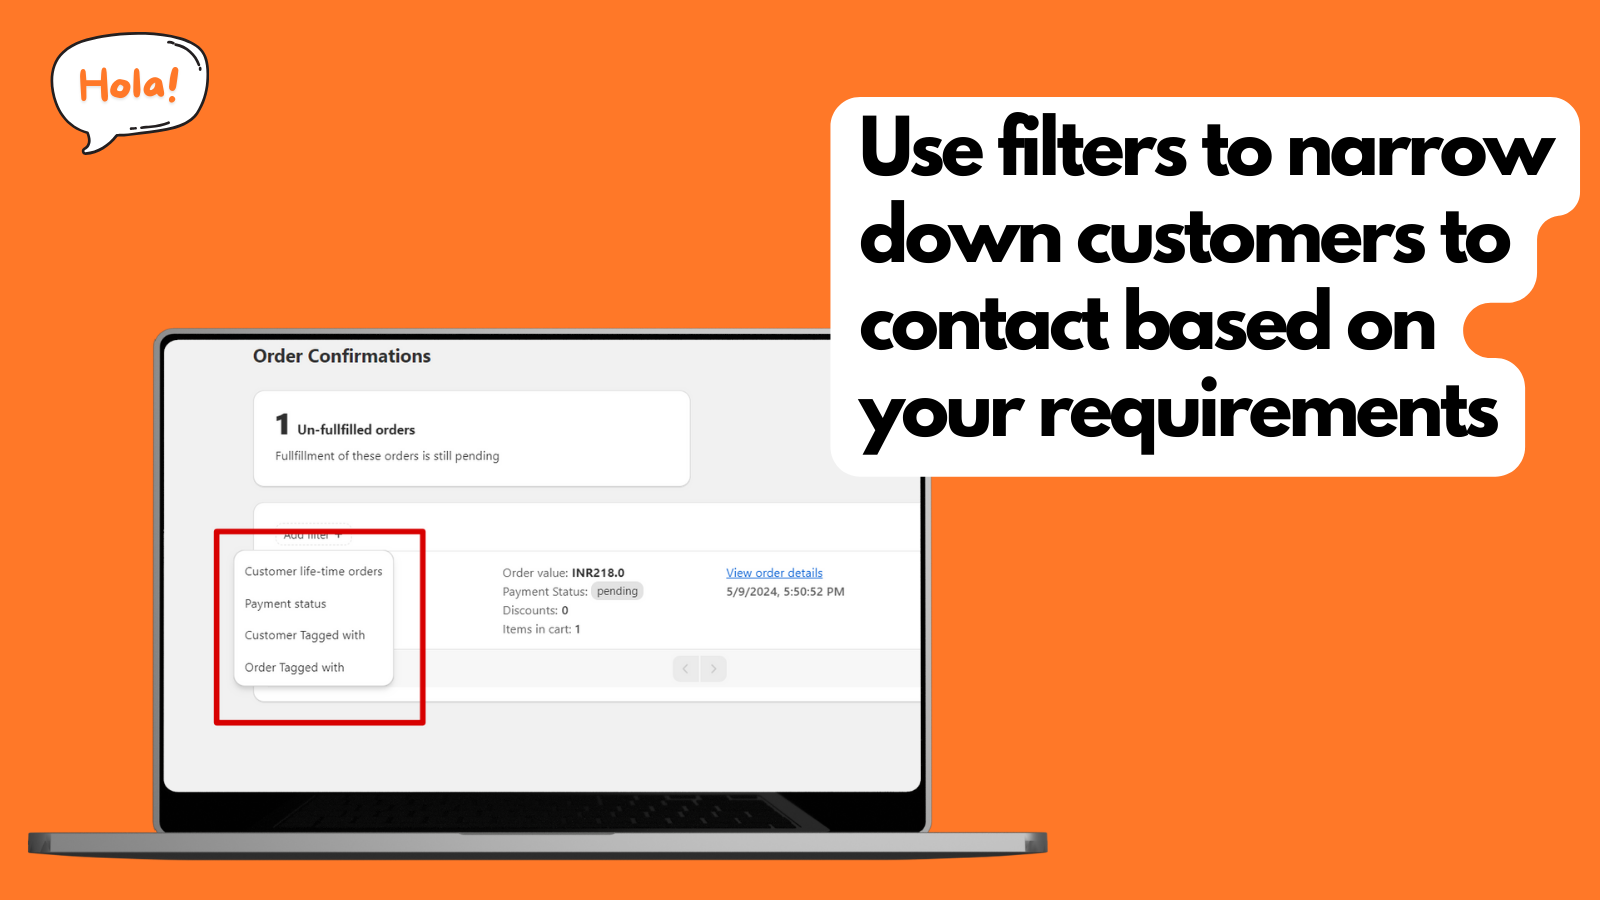 Verwende Filter, um die zu kontaktierenden Kunden einzugrenzen